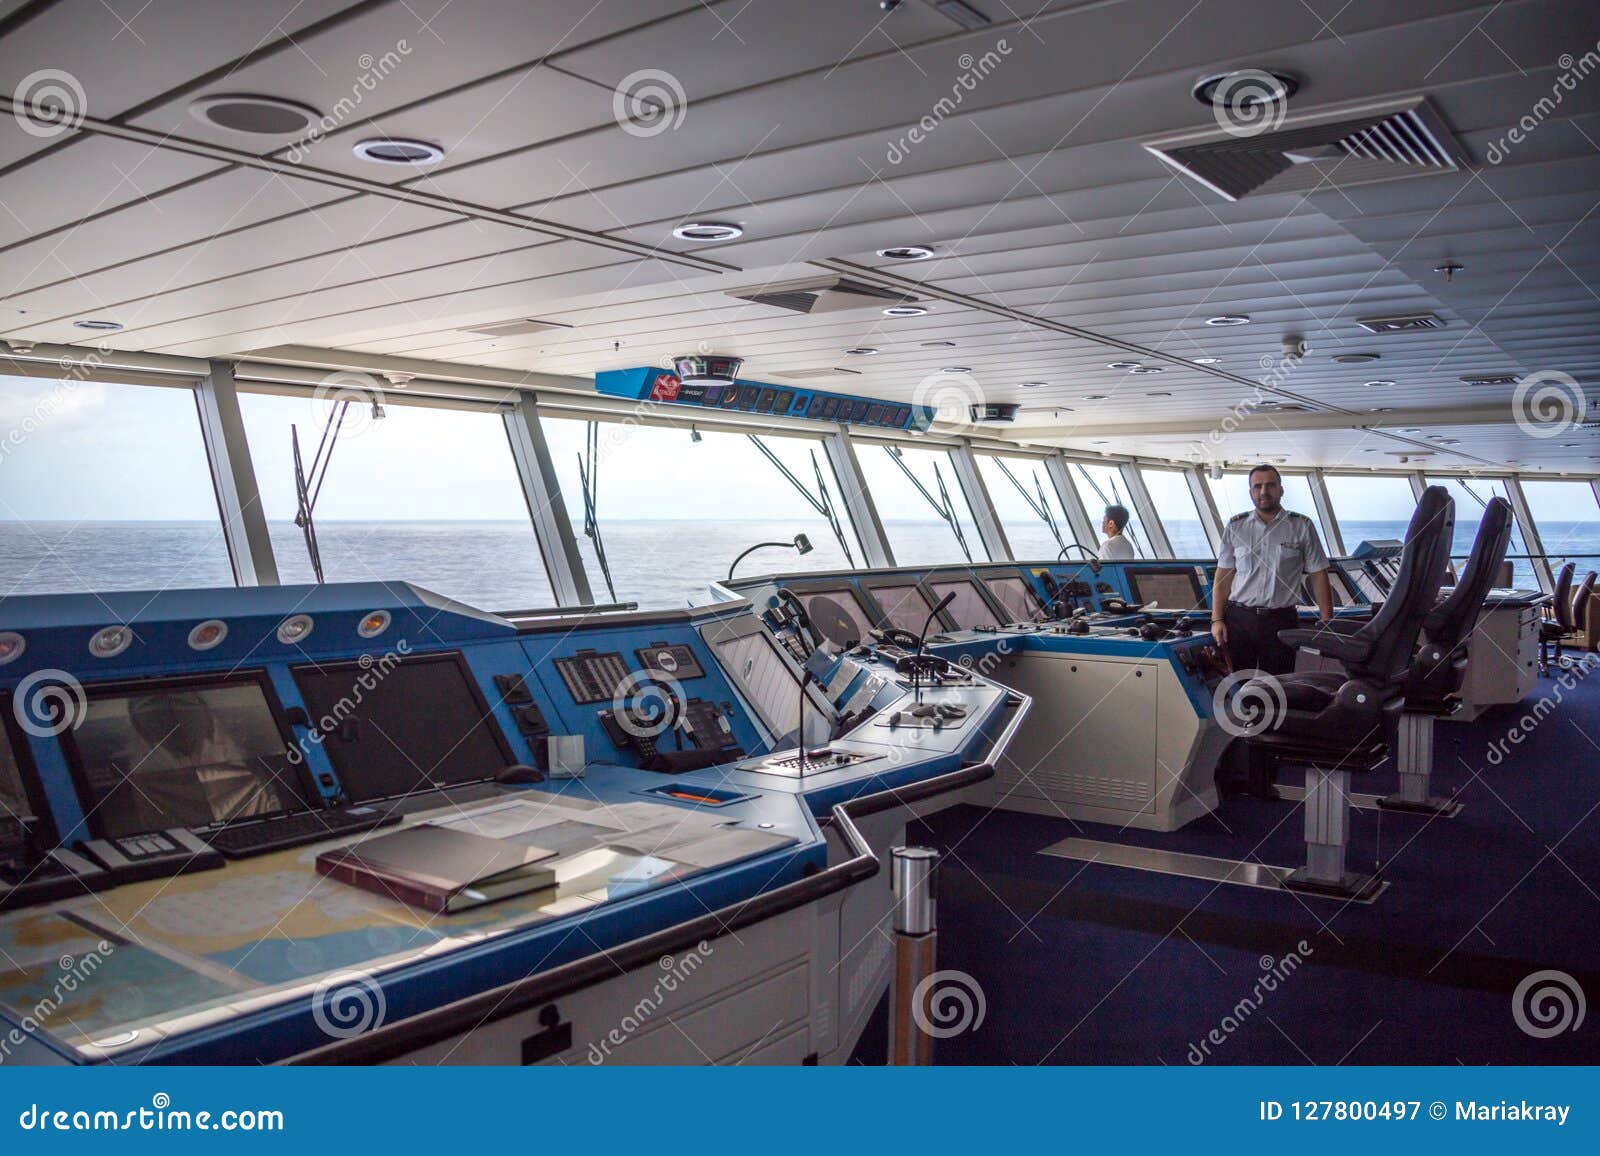 cruise ship captains deck